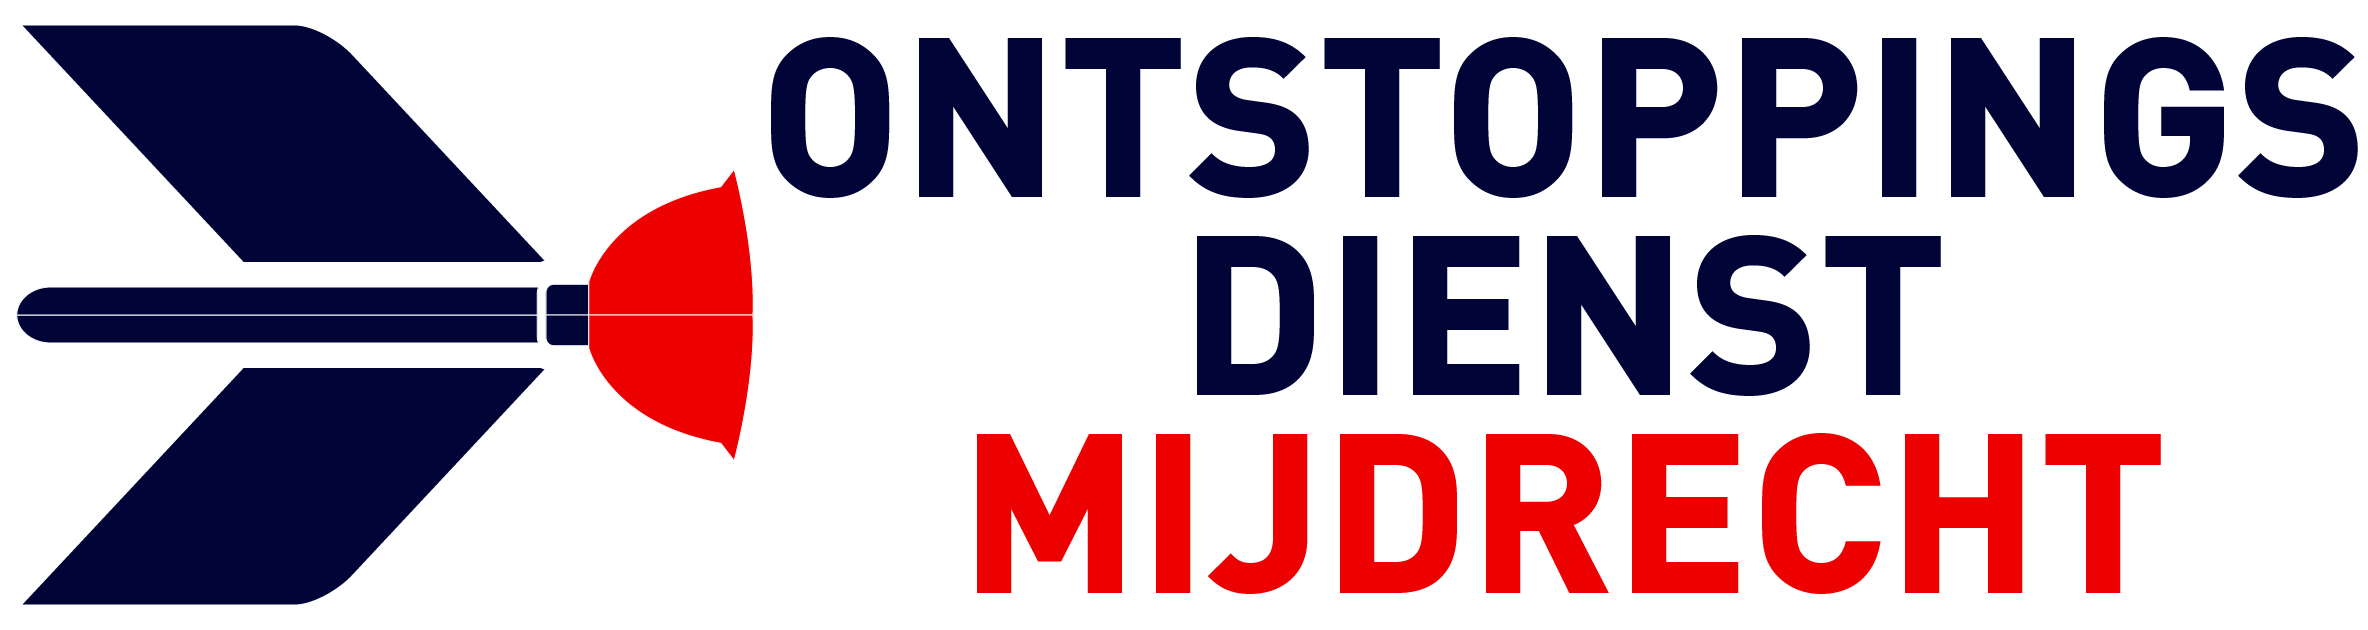 Ontstoppingsdienst Mijdrecht logo